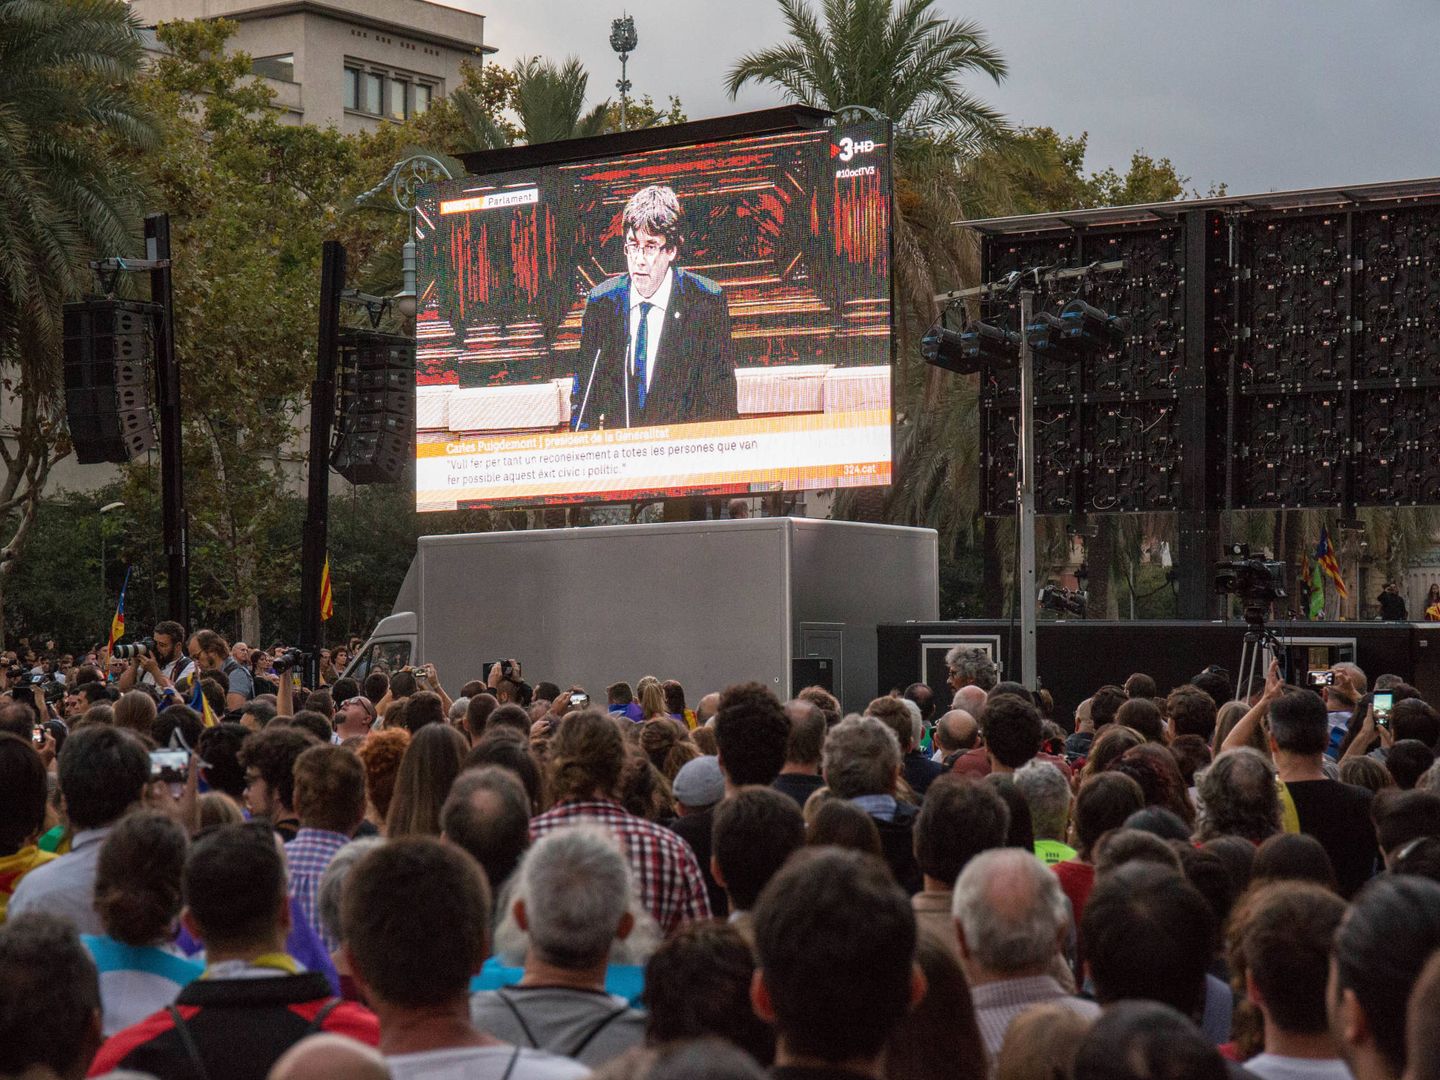 Miles de personas siguieron las palabras de Carles Puigdemont en pantallas gigantes. (D. B.)